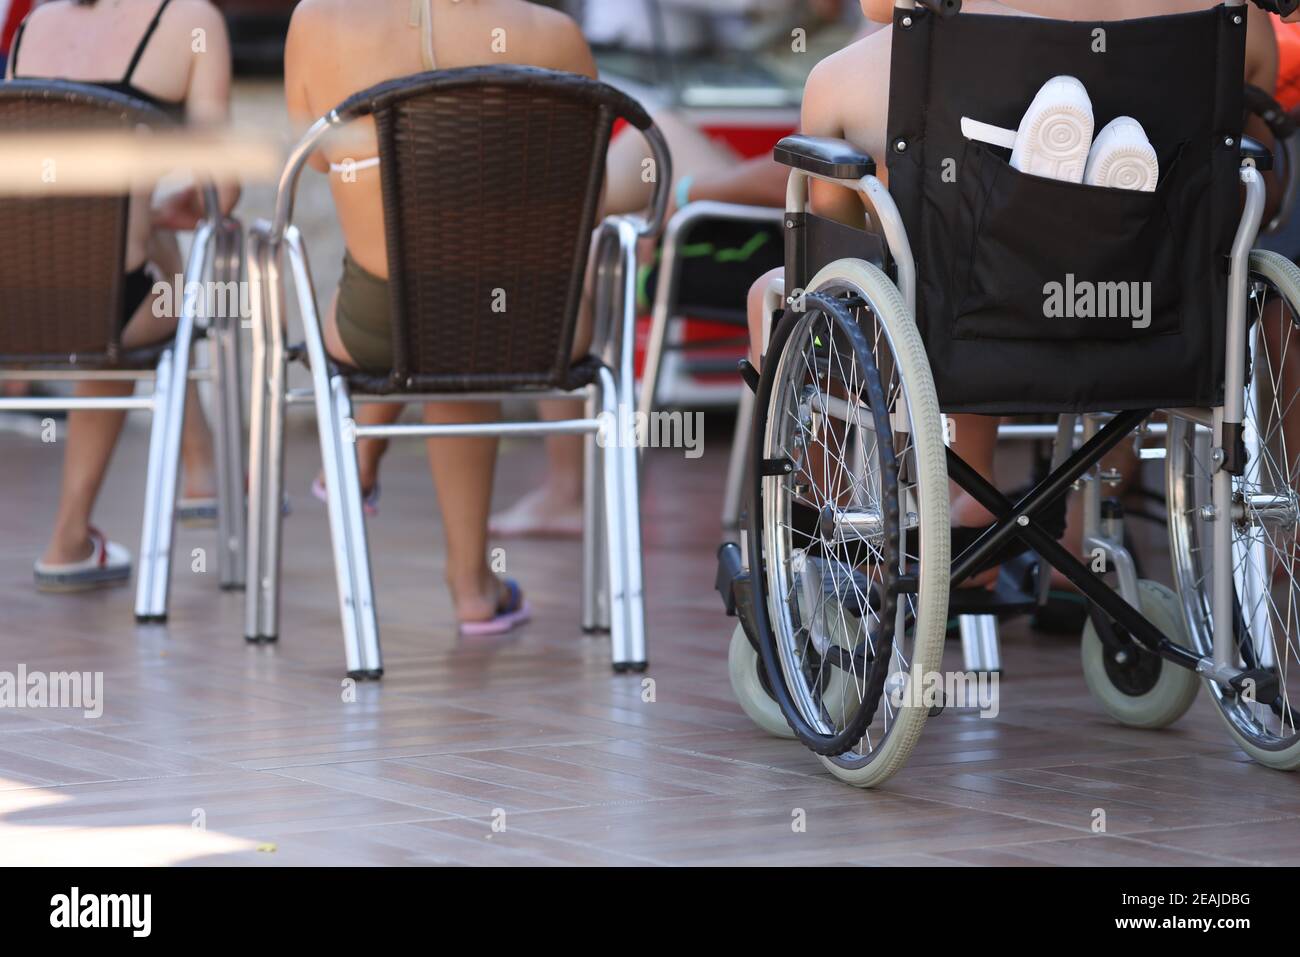 Auf dem Territorium des Hotels gibt es den Rollstuhl, in dem das Kind Sitzt Stockfoto